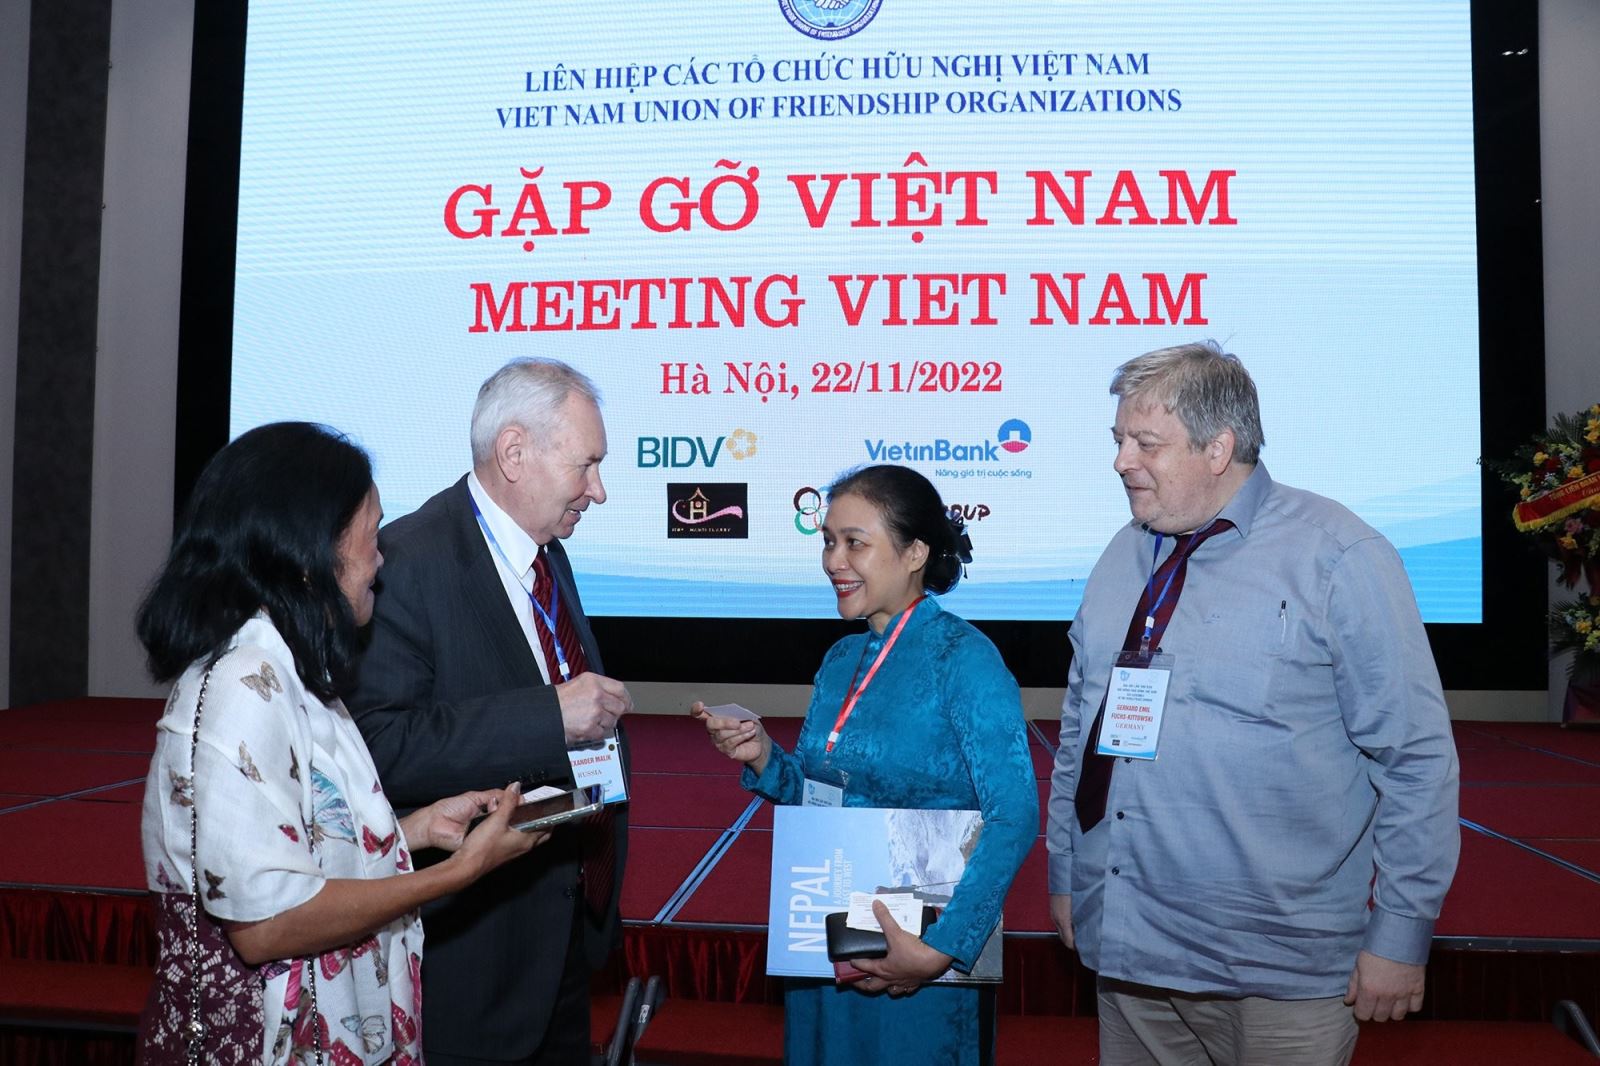 Gặp gỡ Việt Nam: Nơi hội ngộ, vun đắp tình hữu nghị bạn bè quốc tế